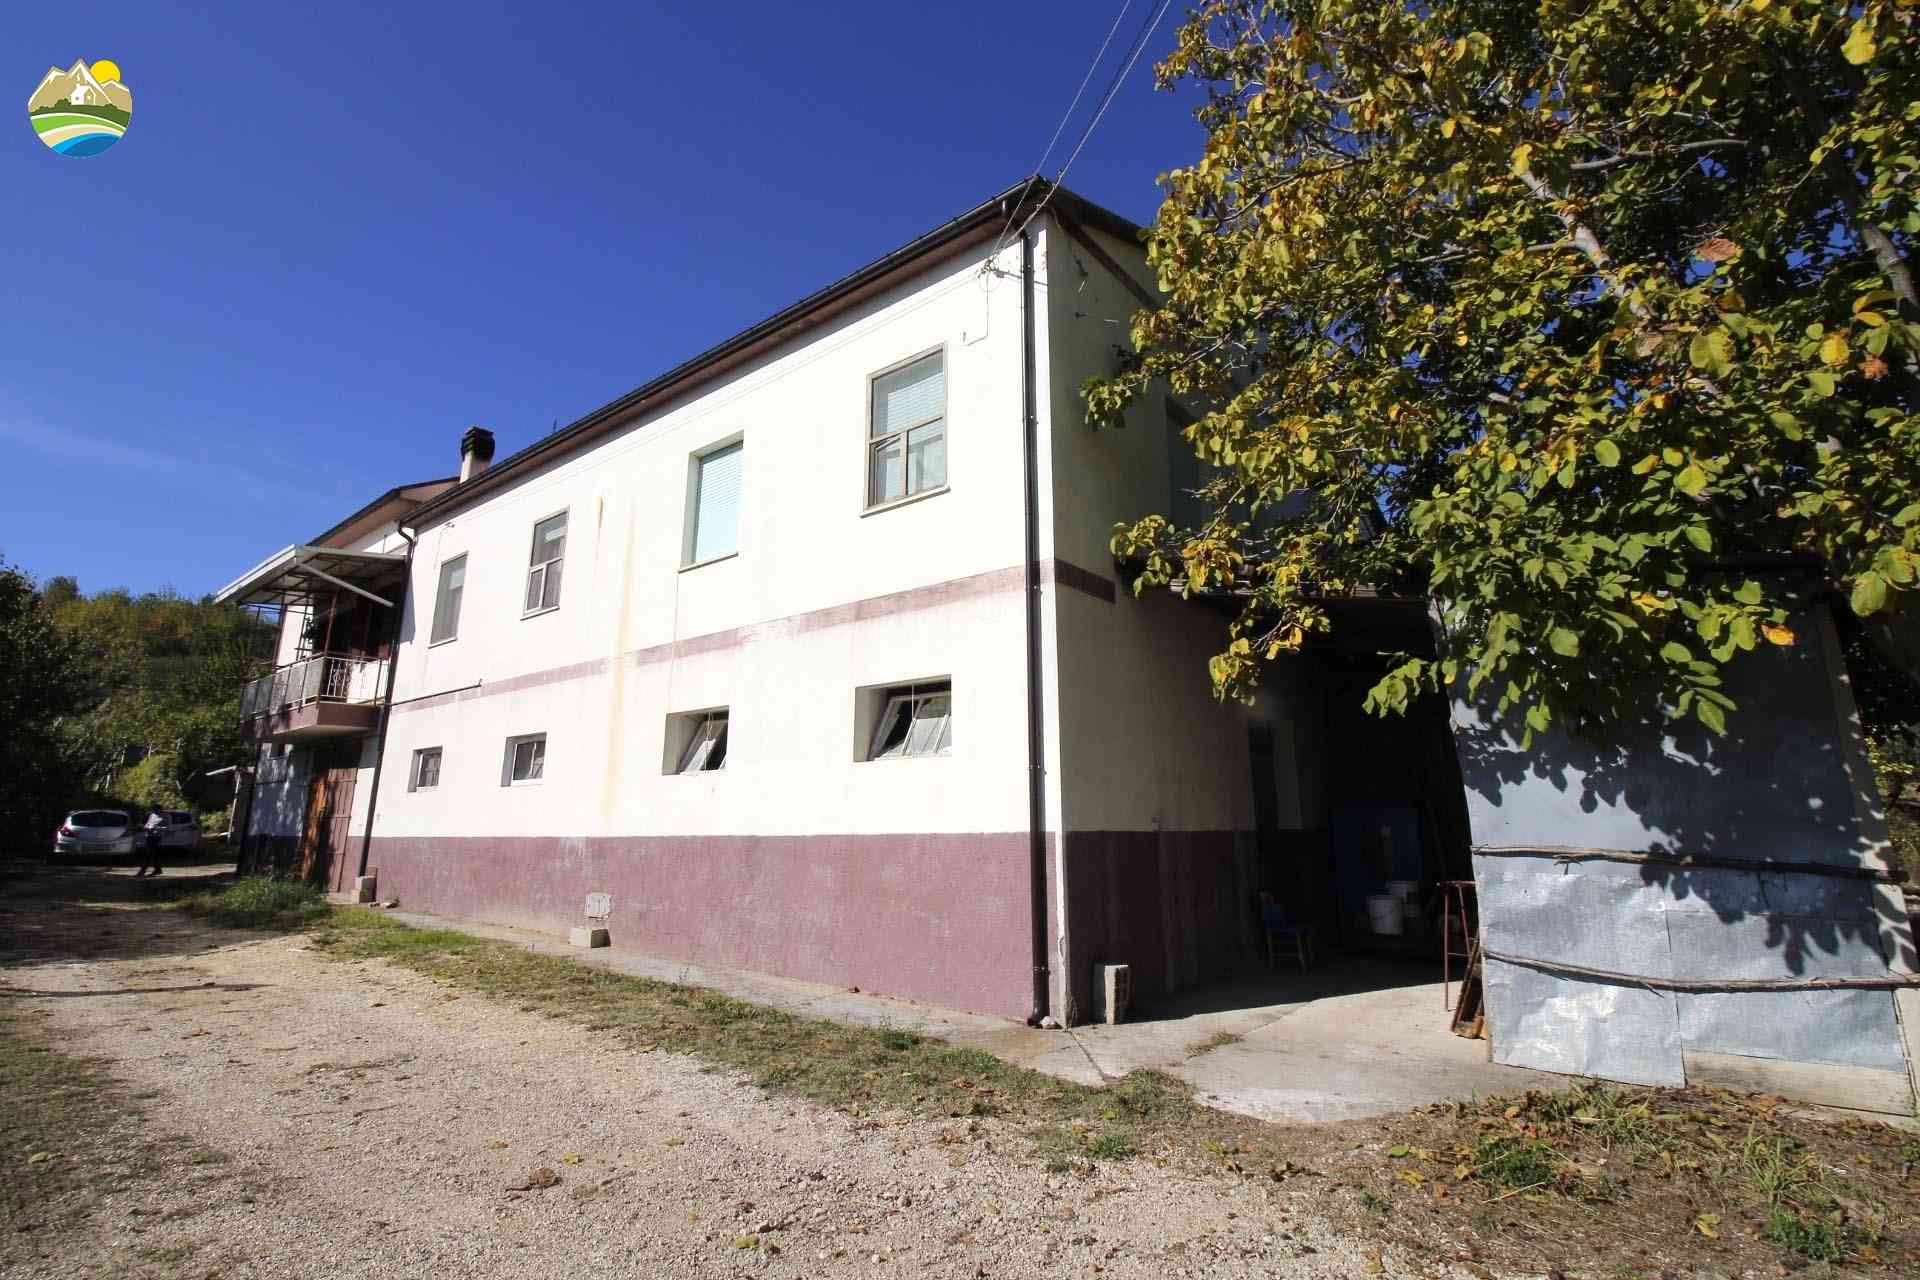 Casa di campagna Casa di campagna in vendita Bisenti (TE), Casa Montonico - Bisenti - EUR 148.473 540